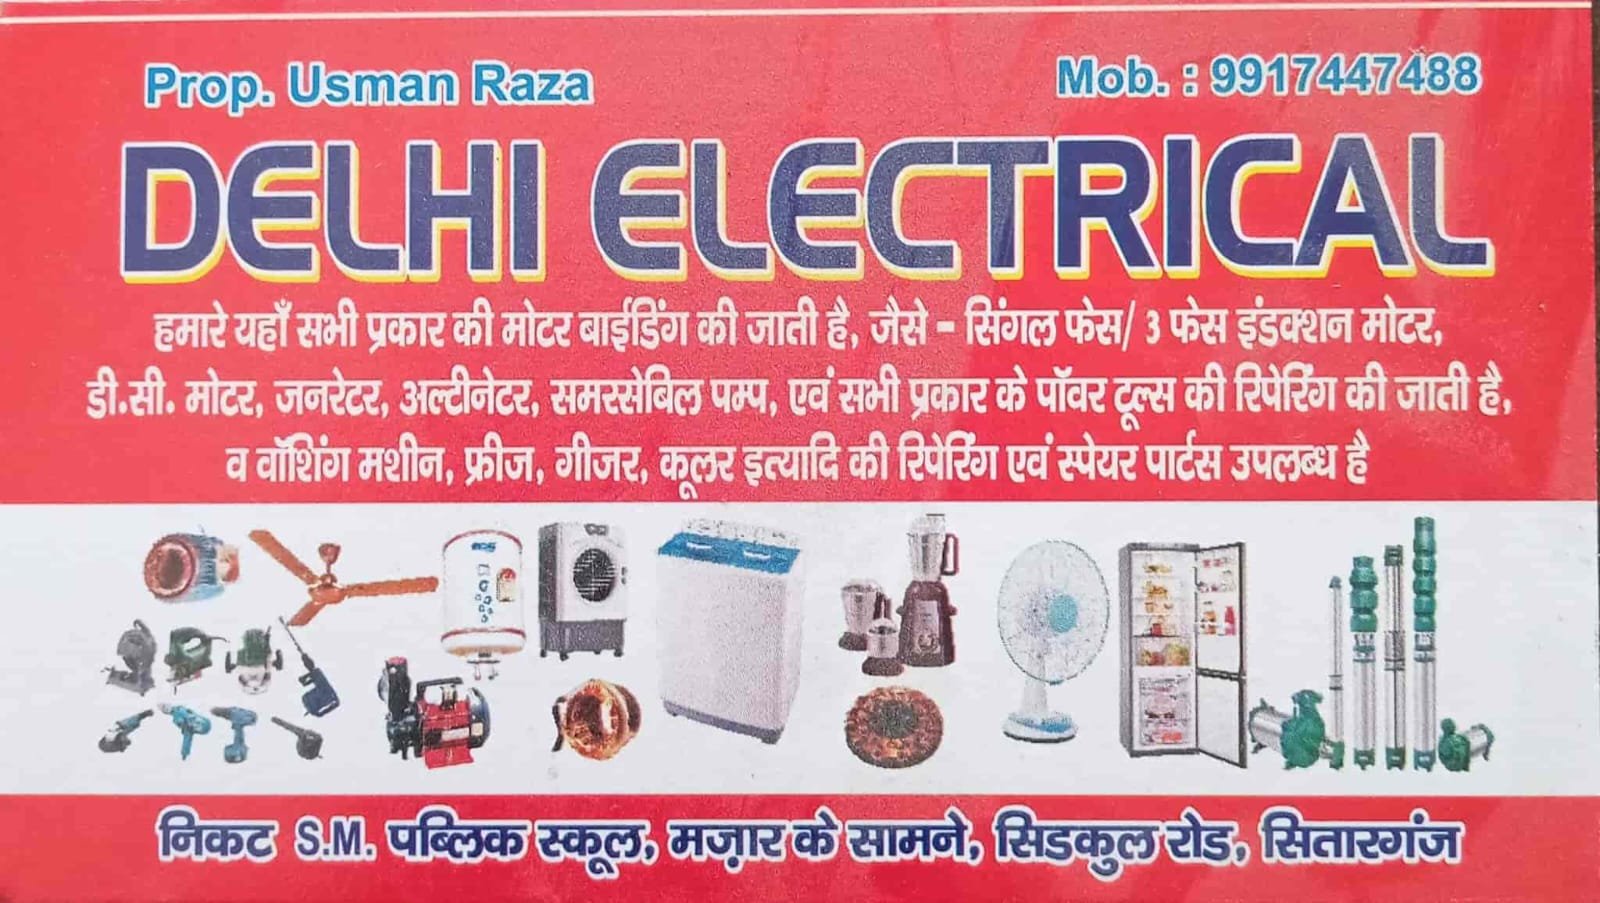 Delhi Electronics